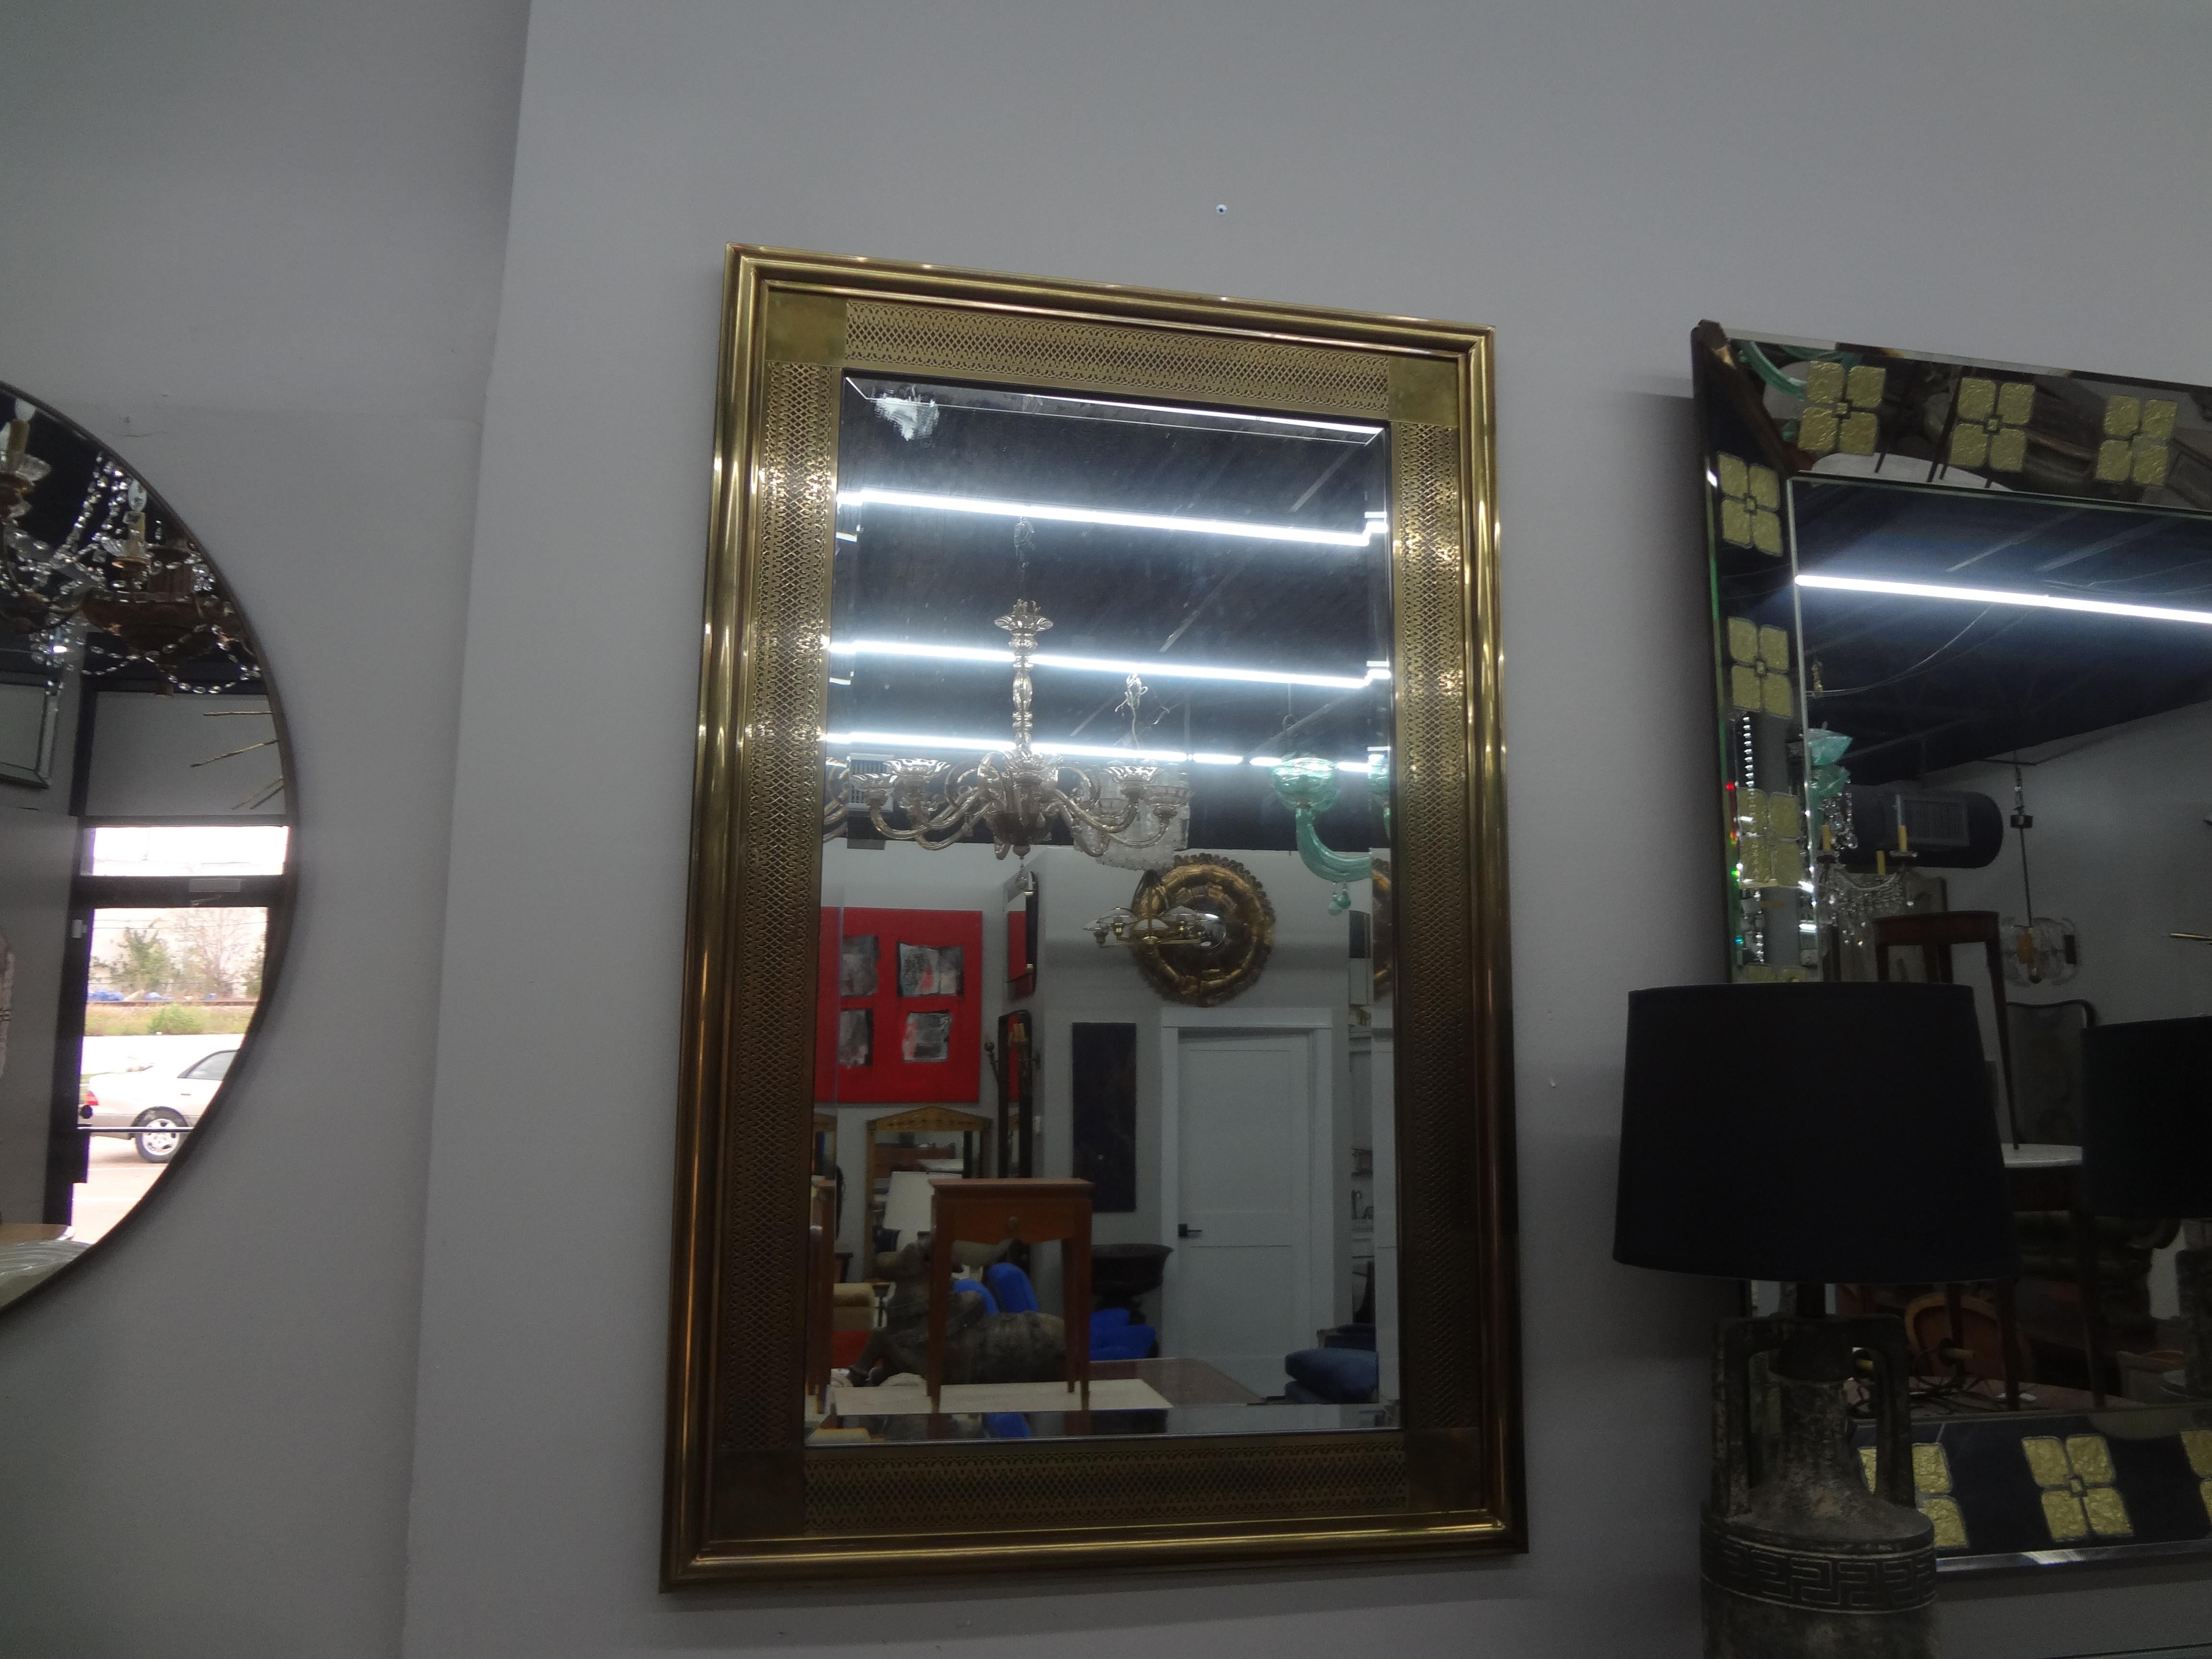 Mastercraft Arabesque Style Messing abgeschrägter Spiegel.
Dieser ungewöhnliche Hollywood-Regency-Spiegel aus Messing hat ein schönes Muster und kann in beide Richtungen aufgestellt werden.
Wunderschöne Patina!